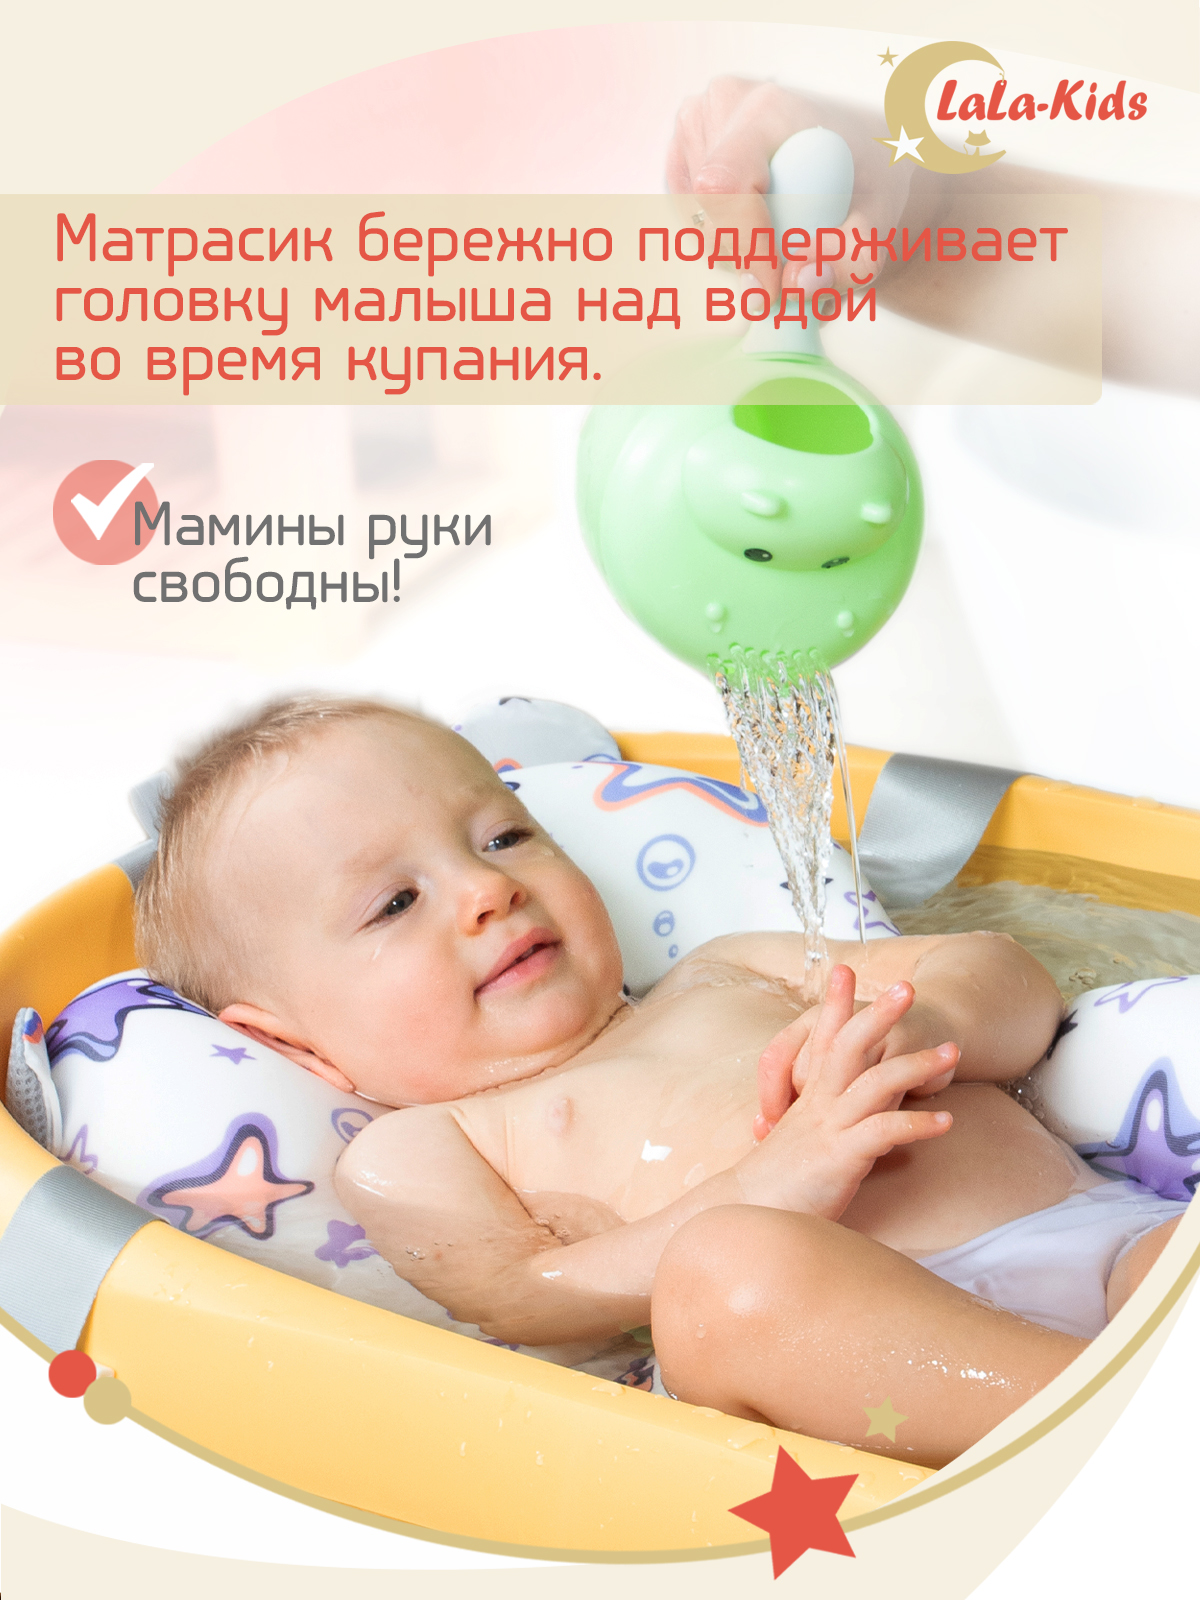 Детская ванночка LaLa-Kids складная с матрасиком для купания новорожденных - фото 11